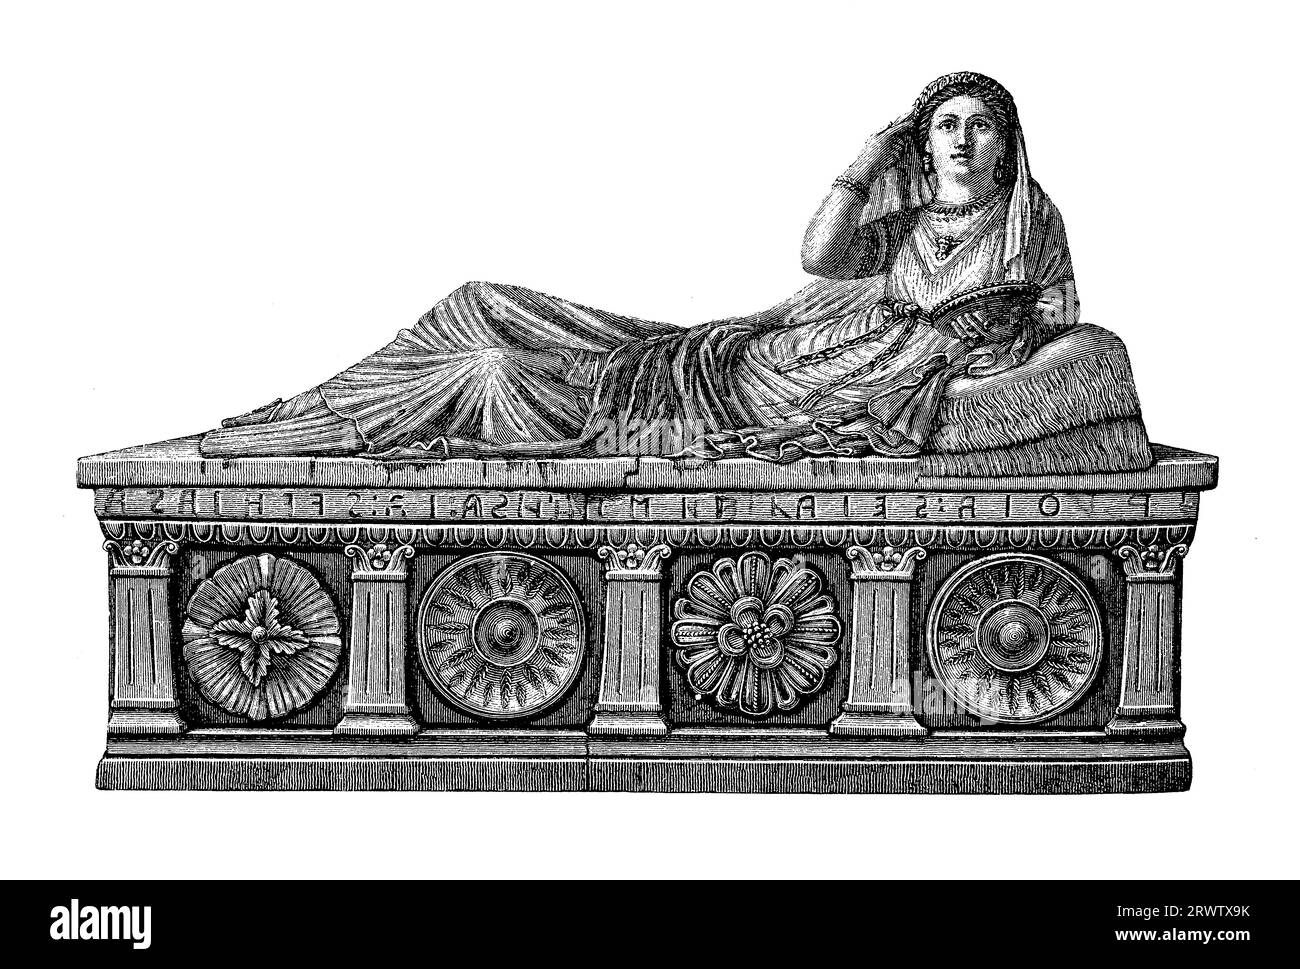 Art funéraire étrusque, sarcophage en terre cuite grandeur nature de Seianti Hanunia Tlesnasa, , noble étrusque (150–140 av. J.-C.), trouvé à Chiusi - Italie maintenant au British Museum Banque D'Images